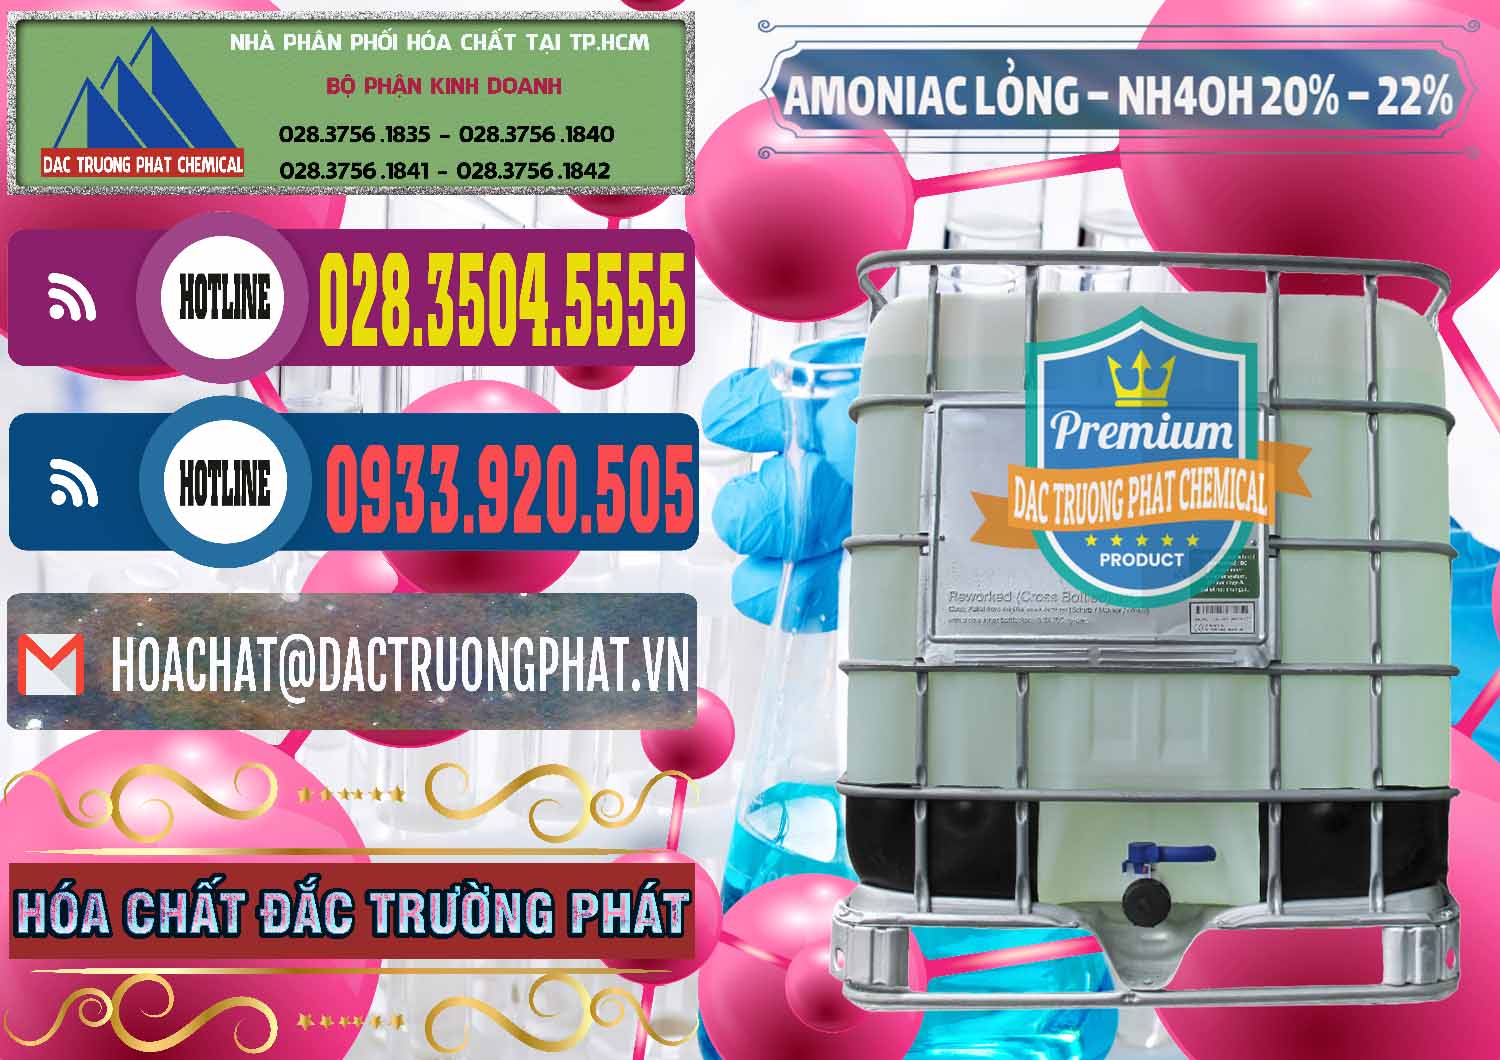 Bán và cung cấp Amoniac Lỏng – NH4OH 20% – 22% Việt Nam - 0185 - Kinh doanh & cung cấp hóa chất tại TP.HCM - muabanhoachat.com.vn